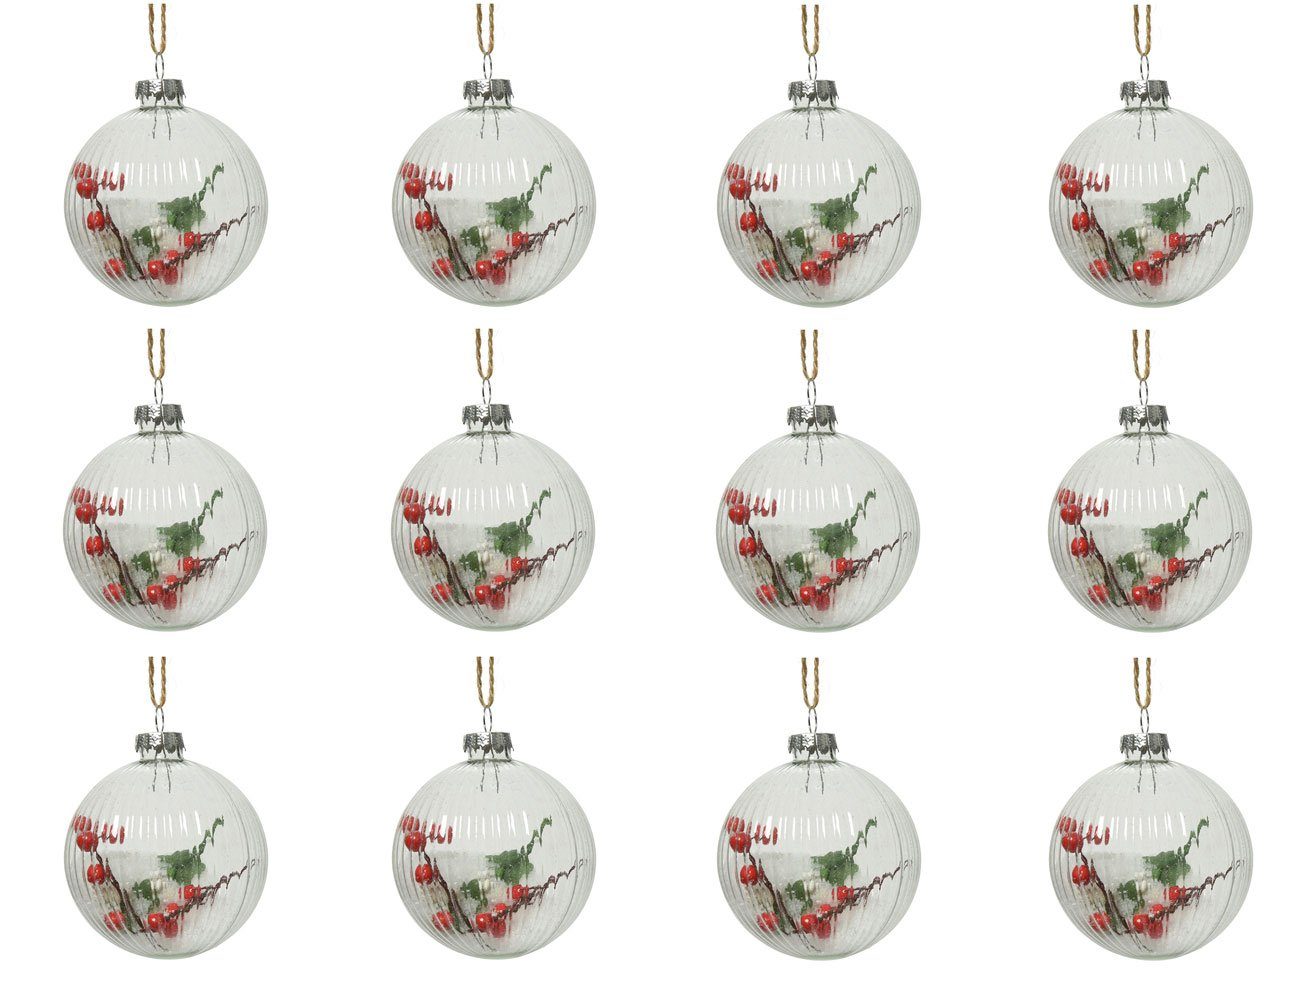 Decoris season decorations Weihnachtsbaumkugel, Weihnachtskugeln Glas gefüllt mit Beeren 8cm klar, 12er Set